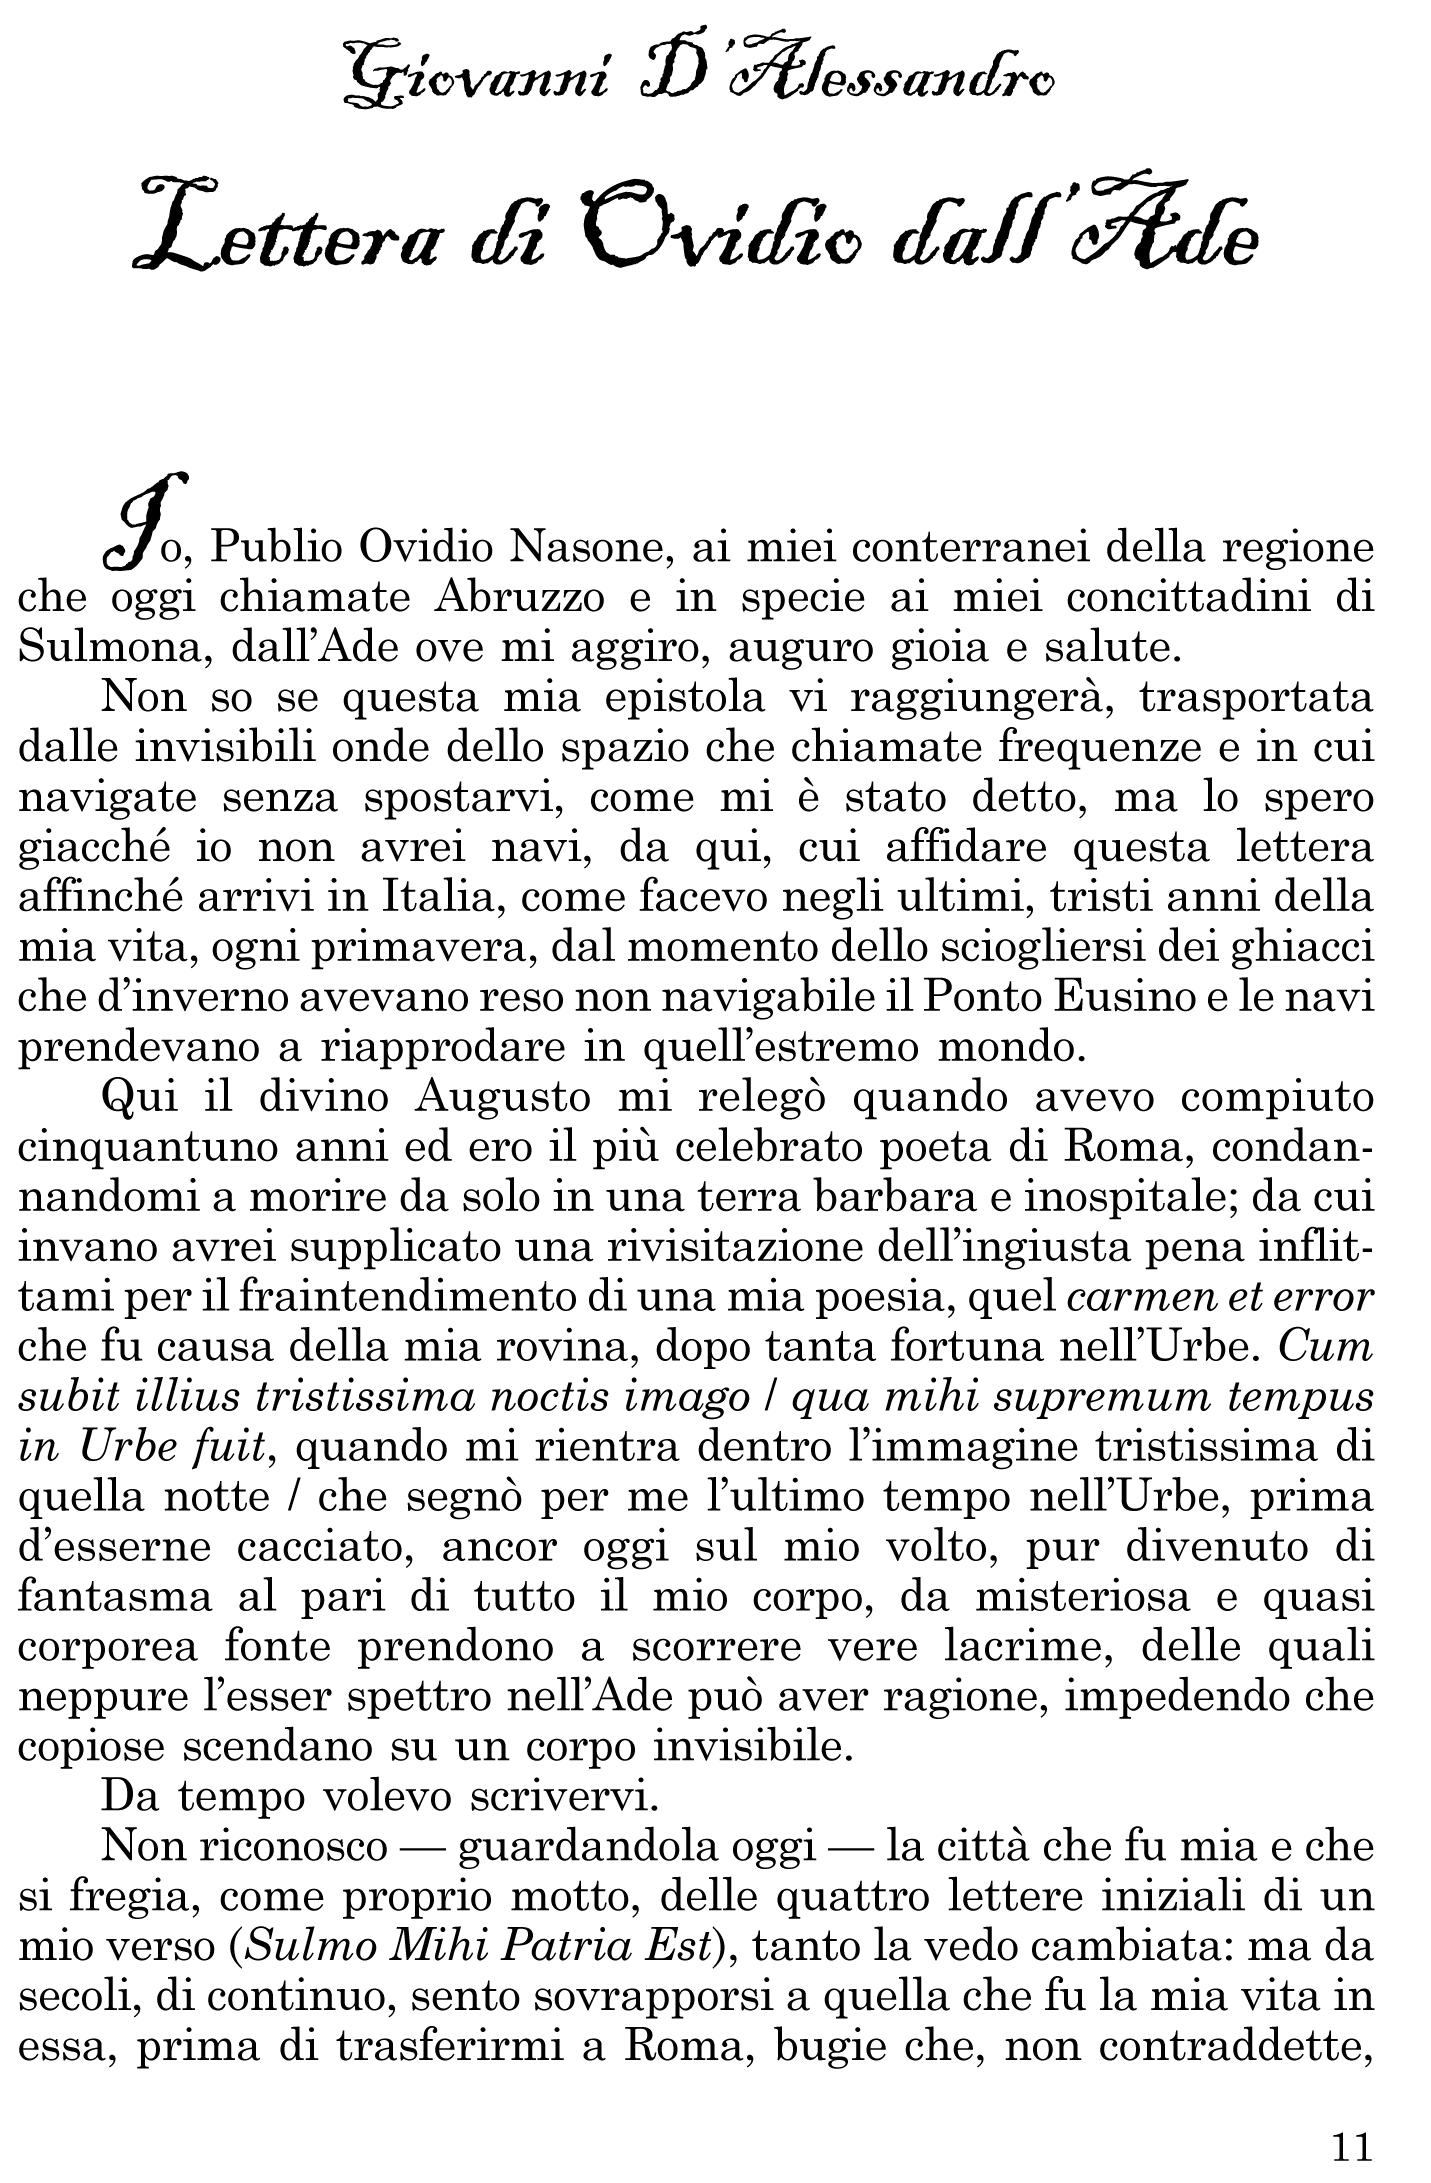 Giovanni D’Alessandro, LETTERA DI OVIDIO DALL’ADE